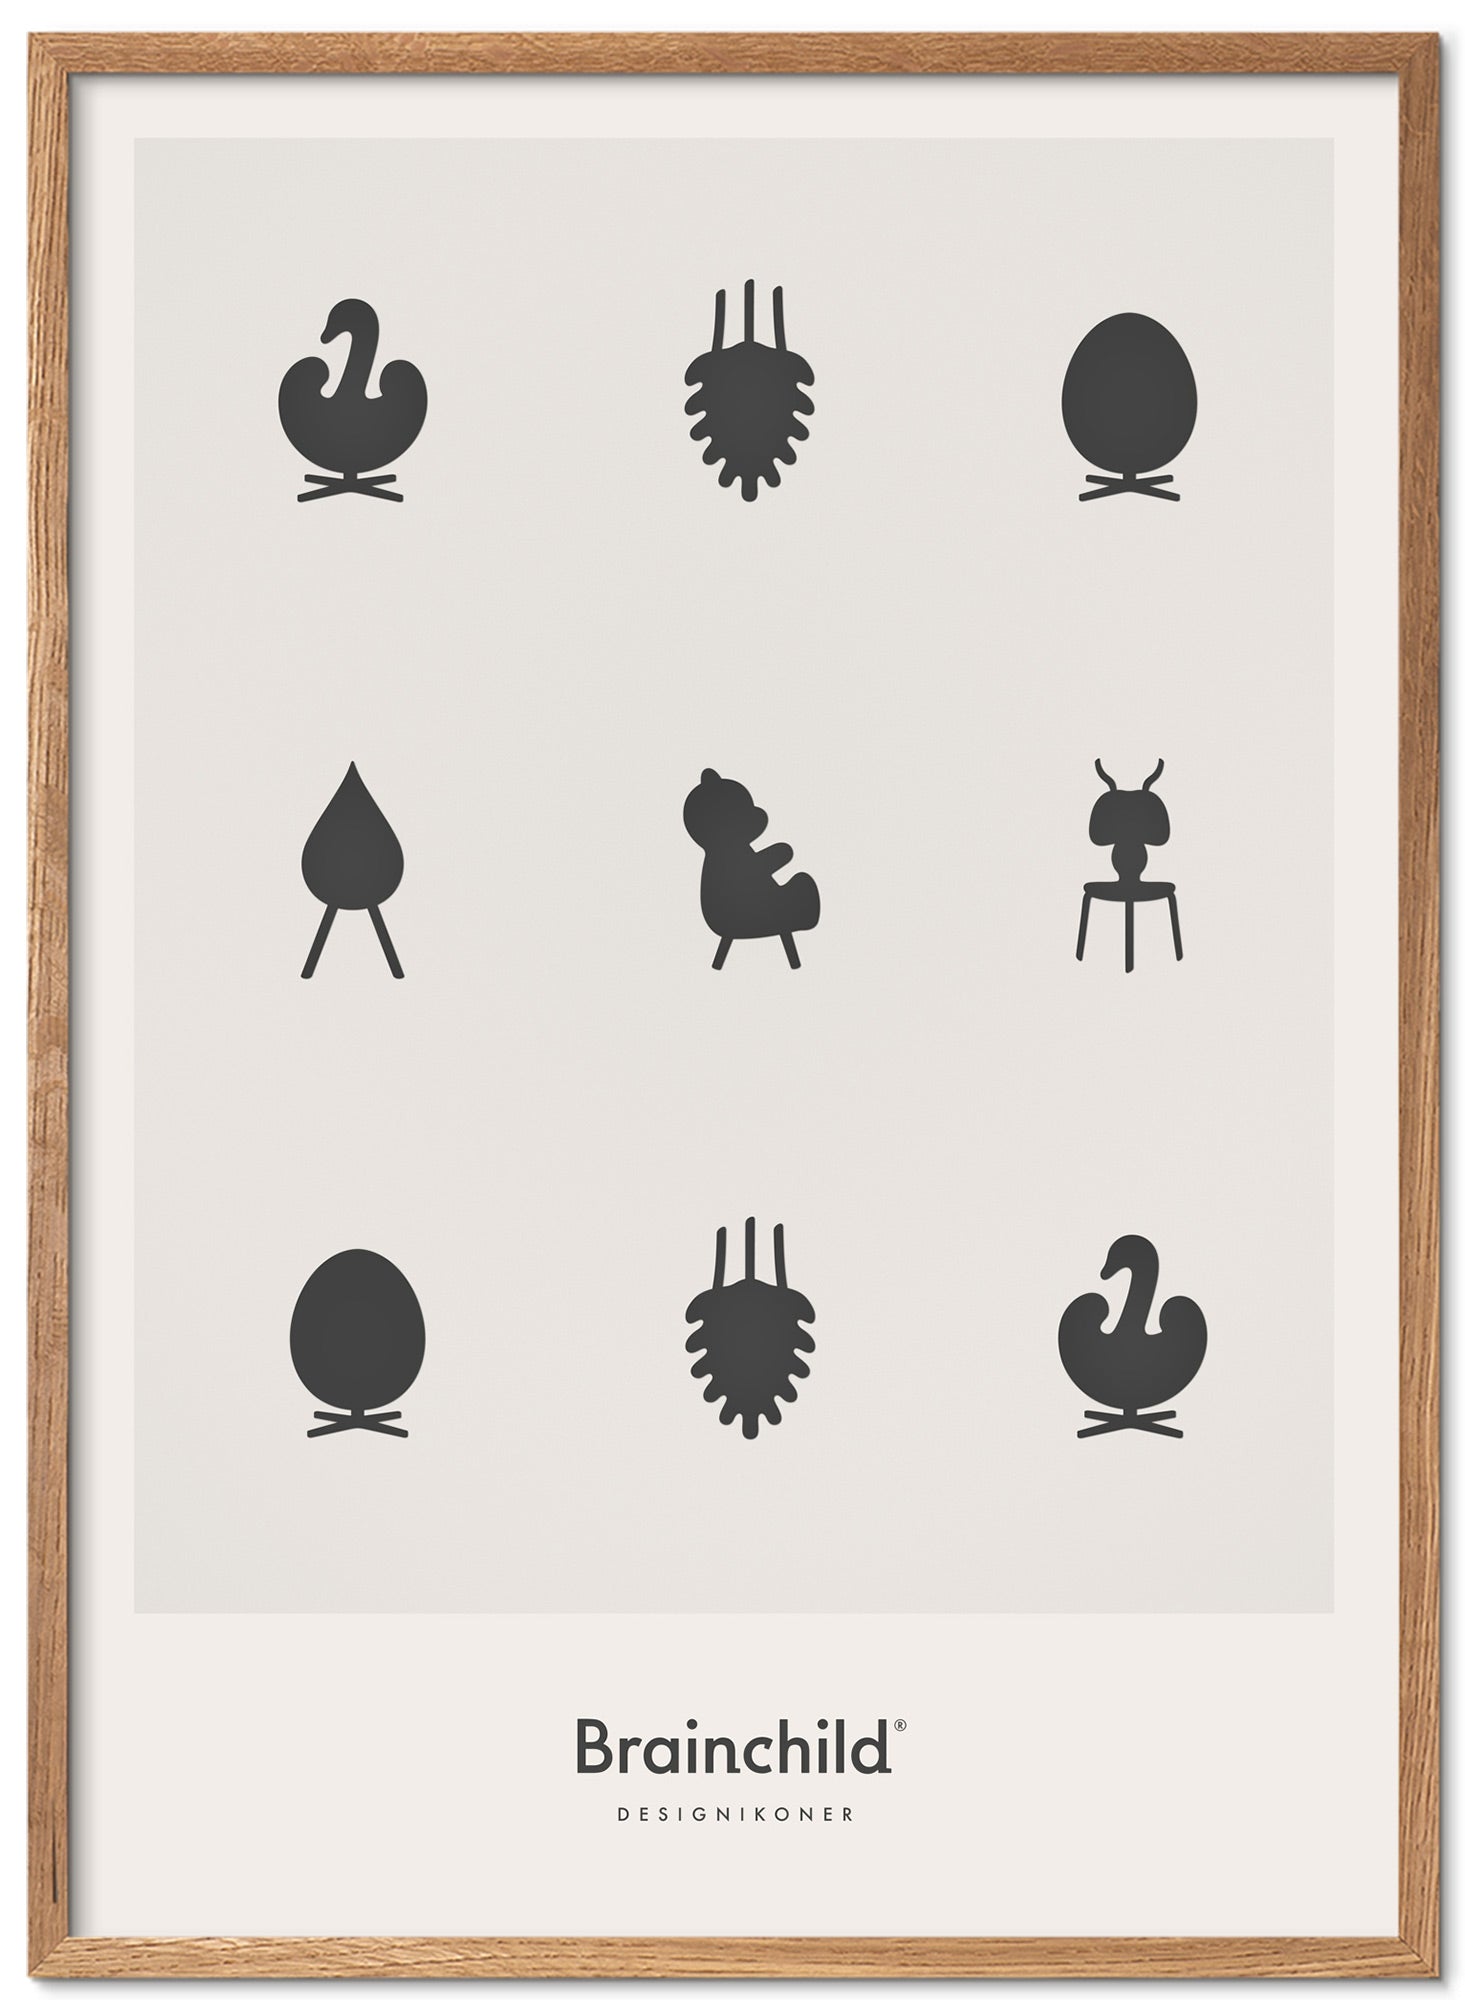 Marco de póster de iconos de diseño de creación de madera clara 50x70 cm, gris claro